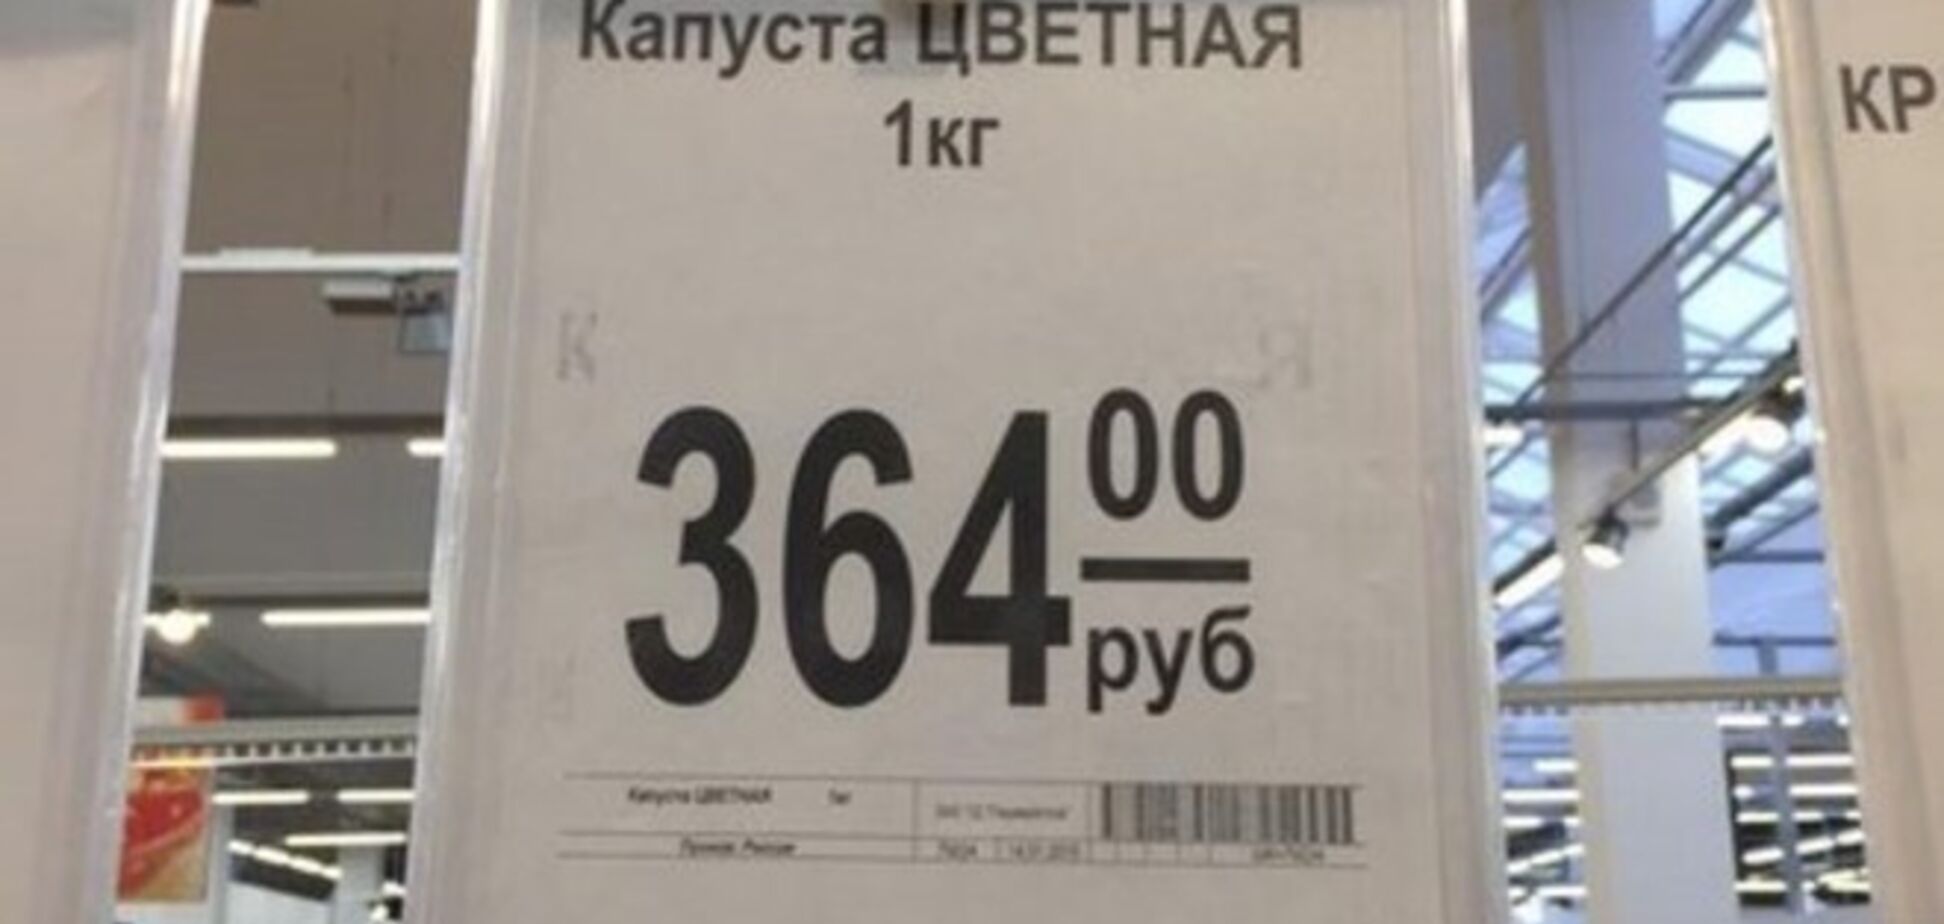 В России взвинтили цены на продукты до космического уровня:фотофакт